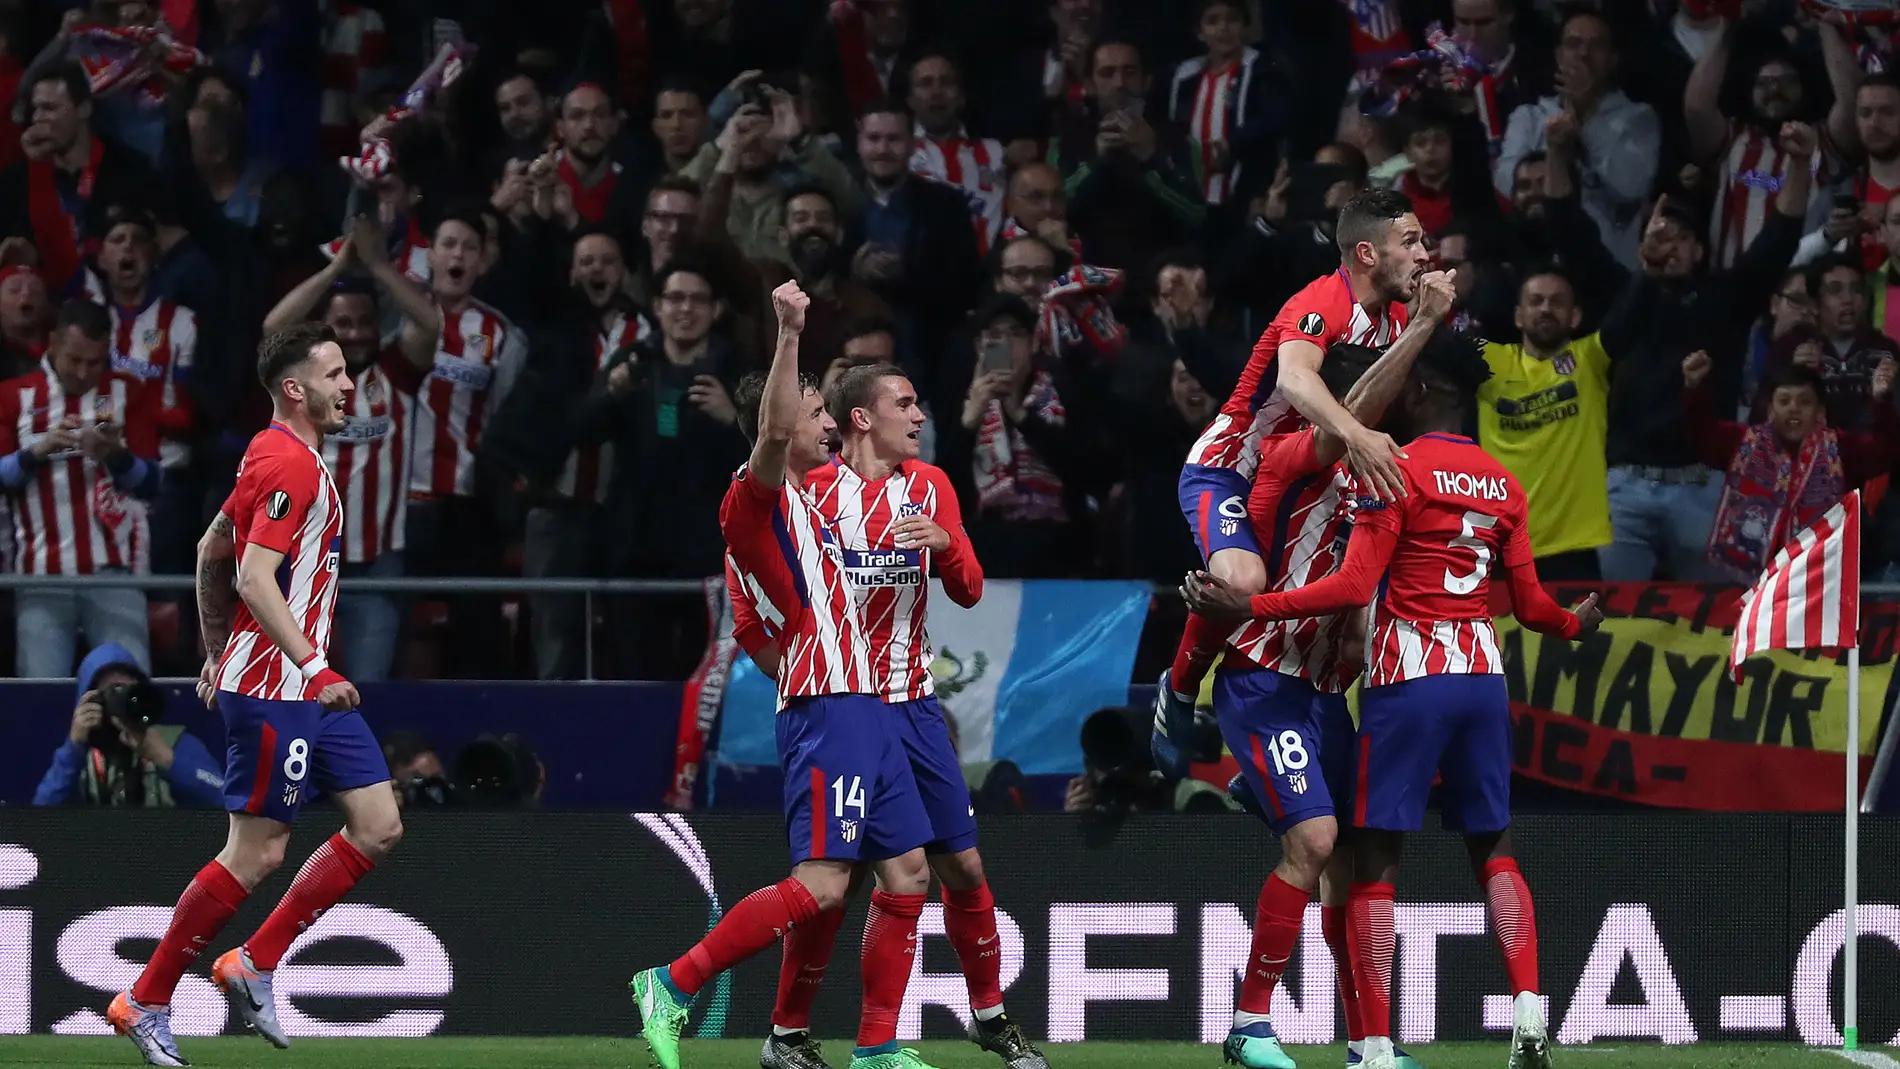 Los jugadores del Atlético de Madrid celebran el gol de Costa contra el Arsenal